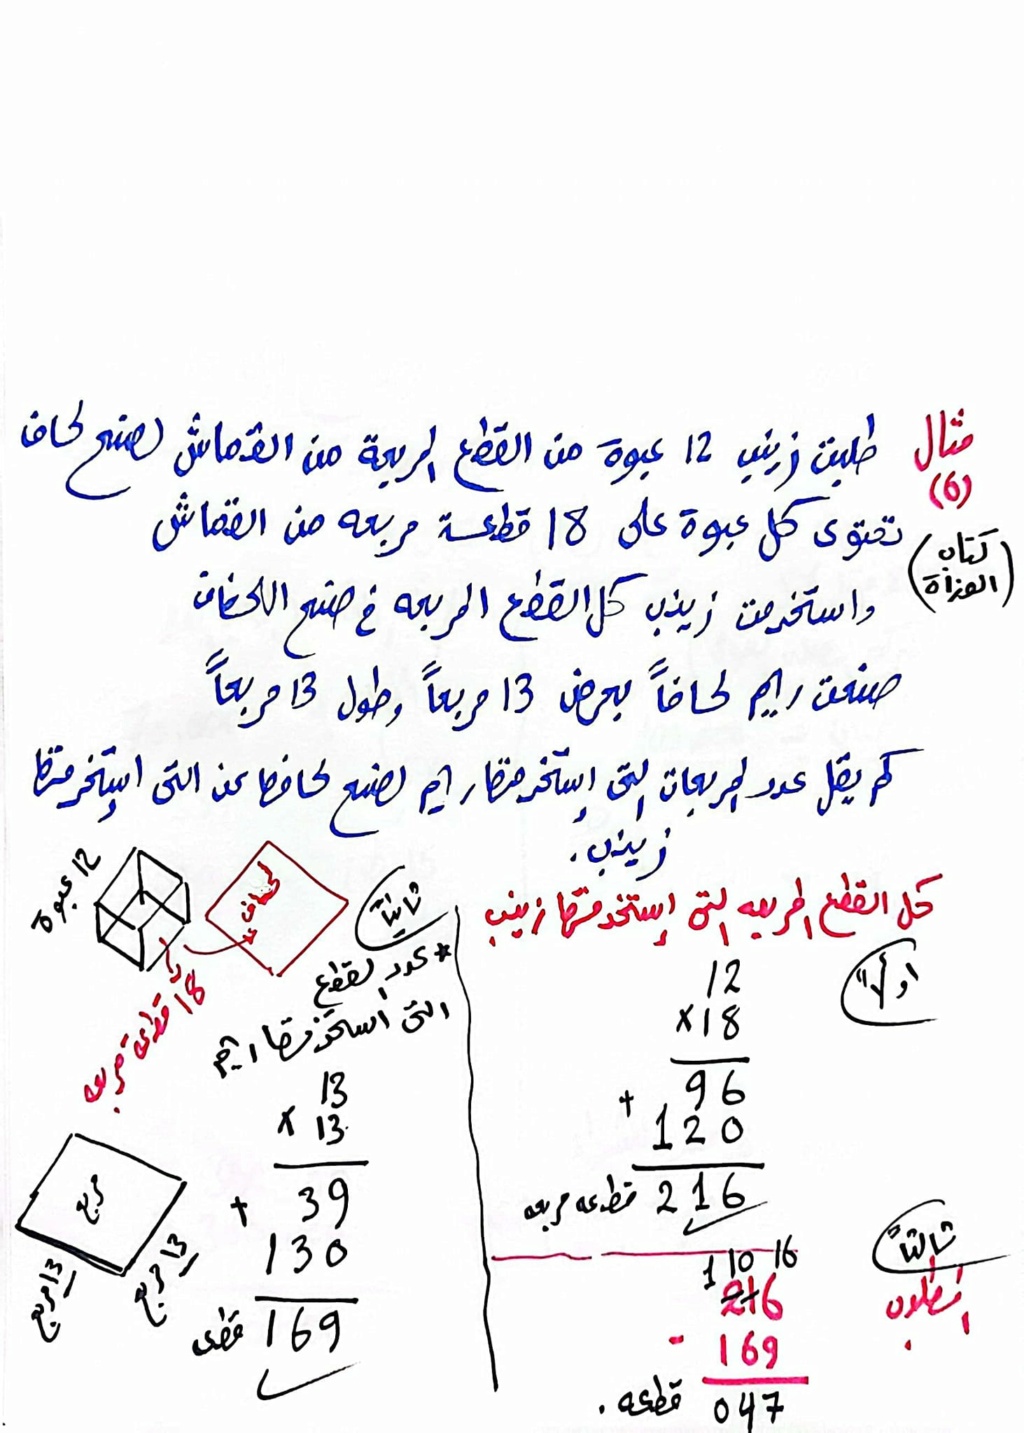  مسائل كلاميه متعدده الخطوات رياضيات خامسة ابتدائي مستر محمد ابراهيم 472